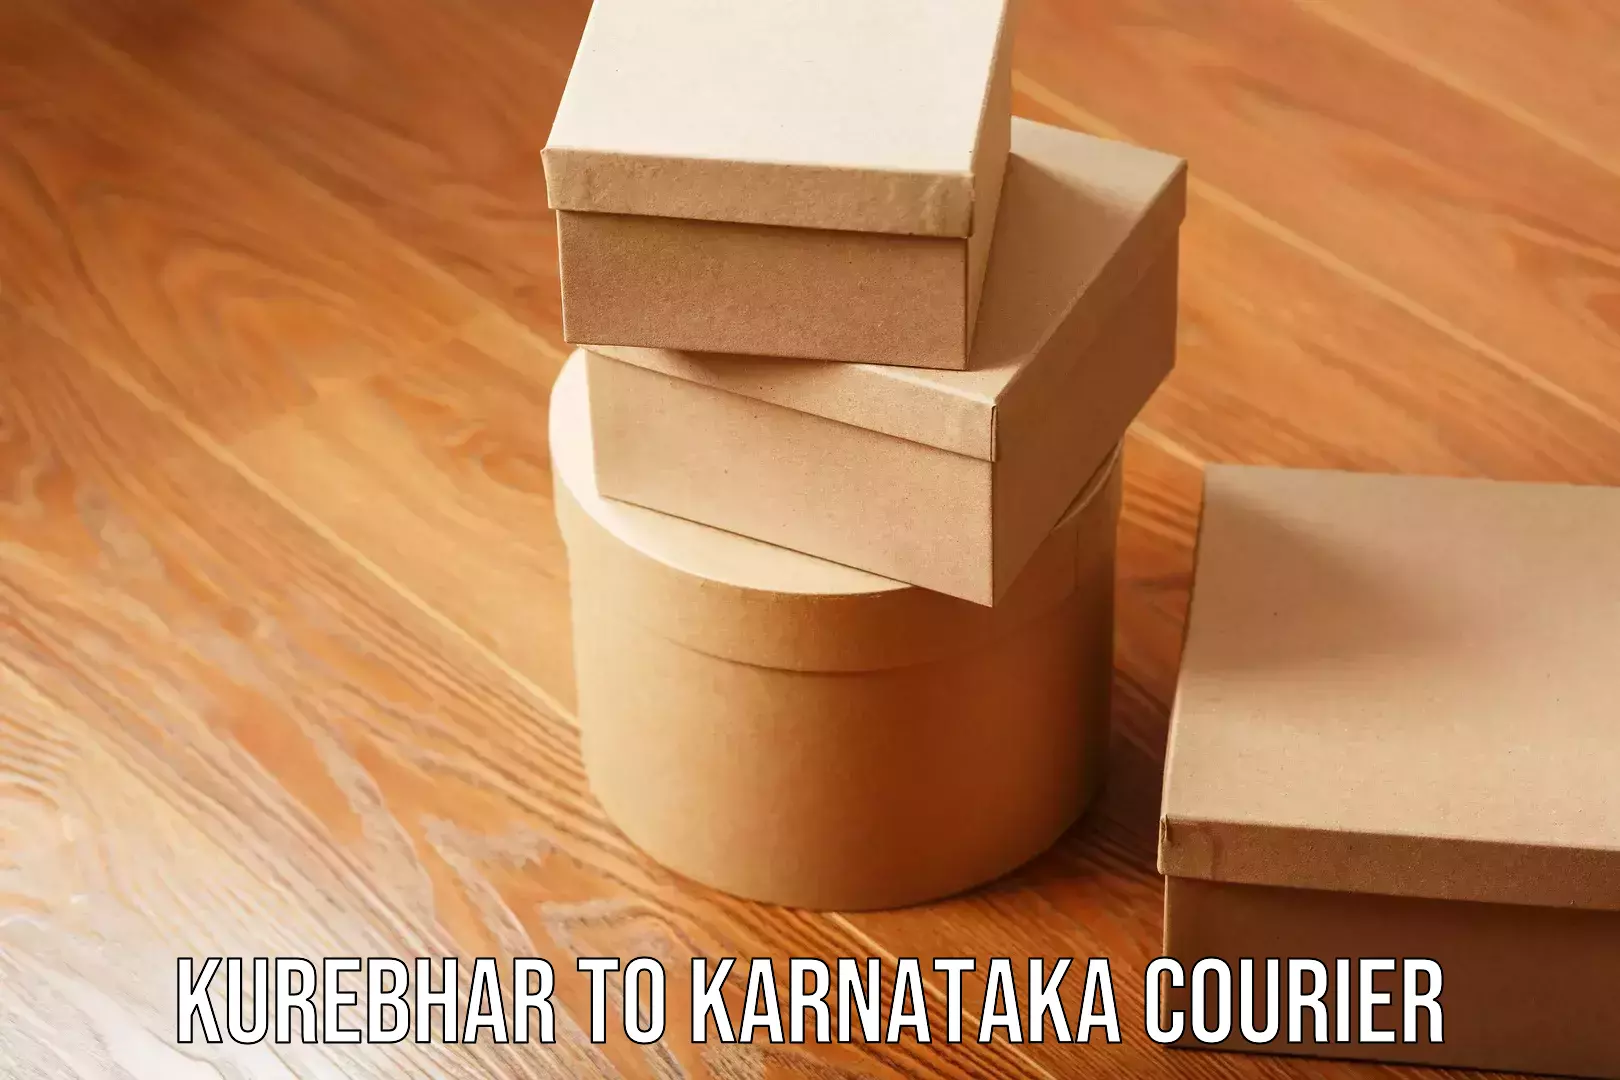 Efficient home goods movers Kurebhar to Karnataka